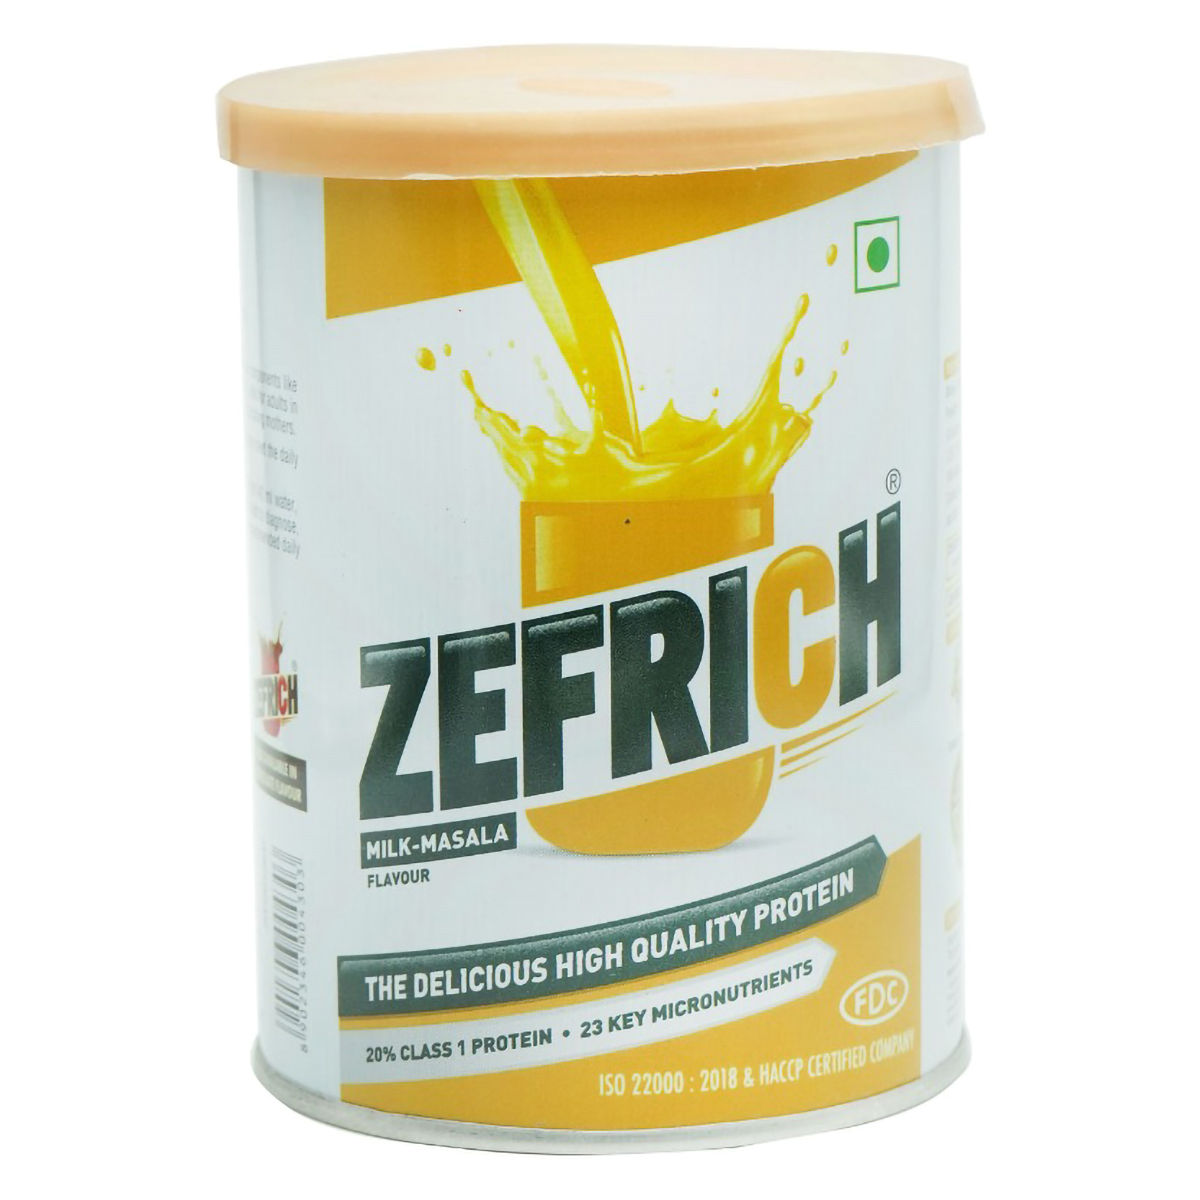 Buy Zefrich Milk-Masala Flavour Powder, 200 gm Tin Online